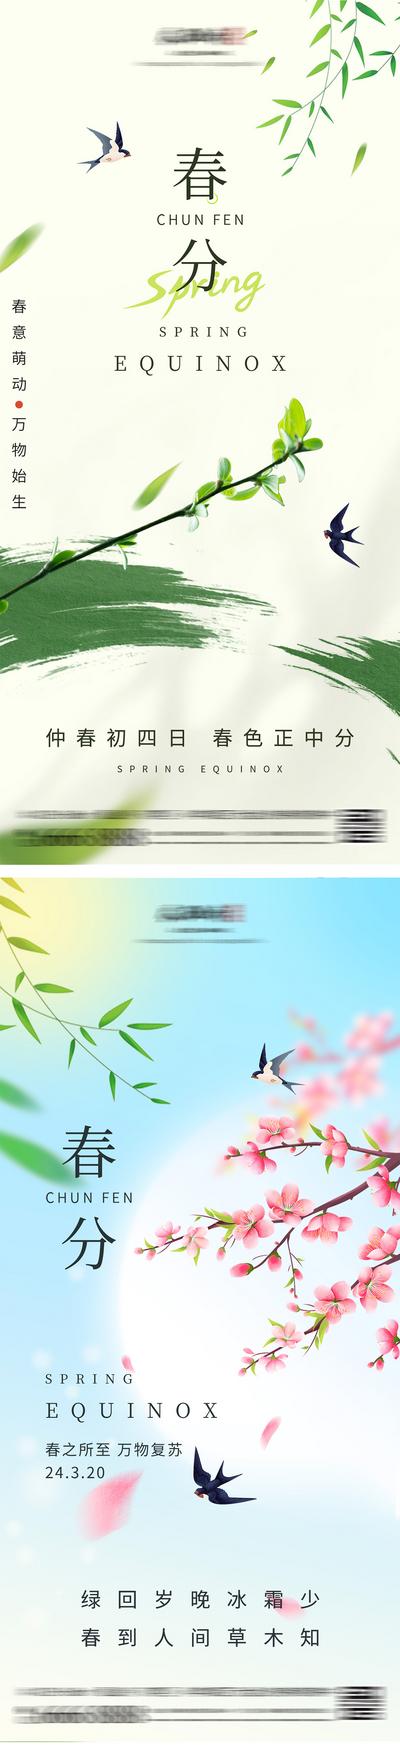 南门网 广告 海报 二十四节气 春分 立春 春天 燕子 桃花 简约 竹叶 清新 意境